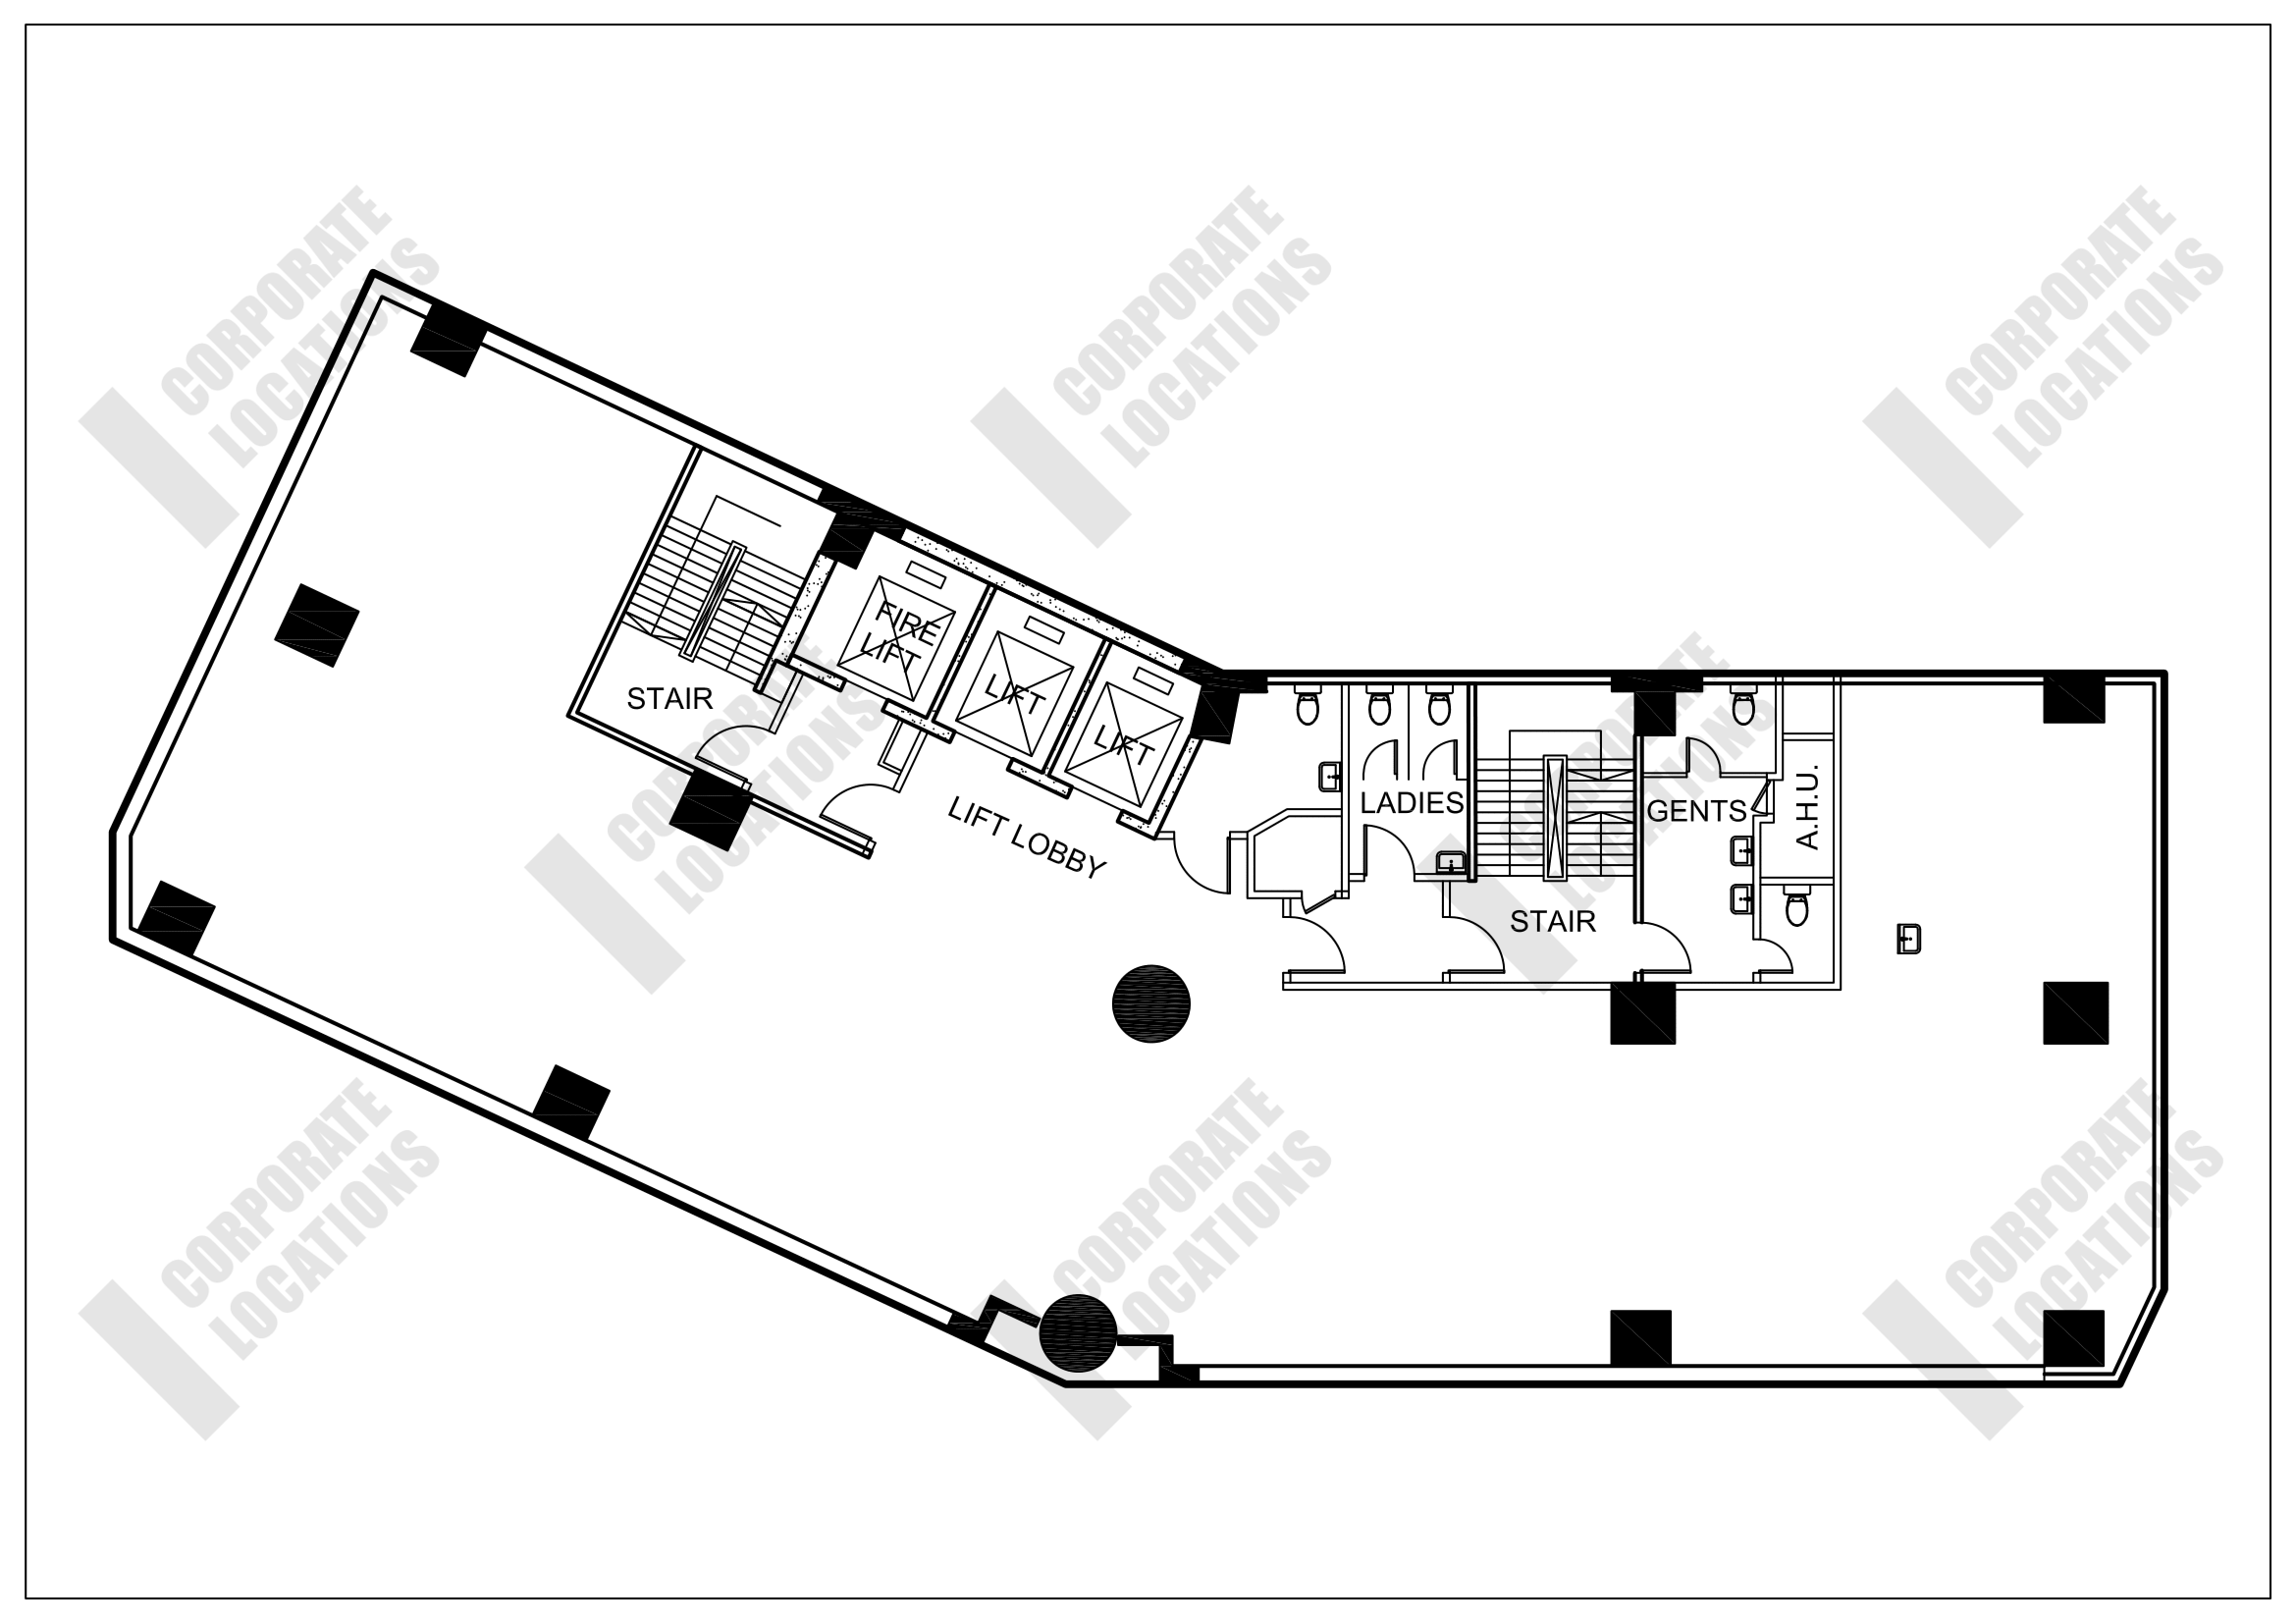 Floorplan Lee Garden Six